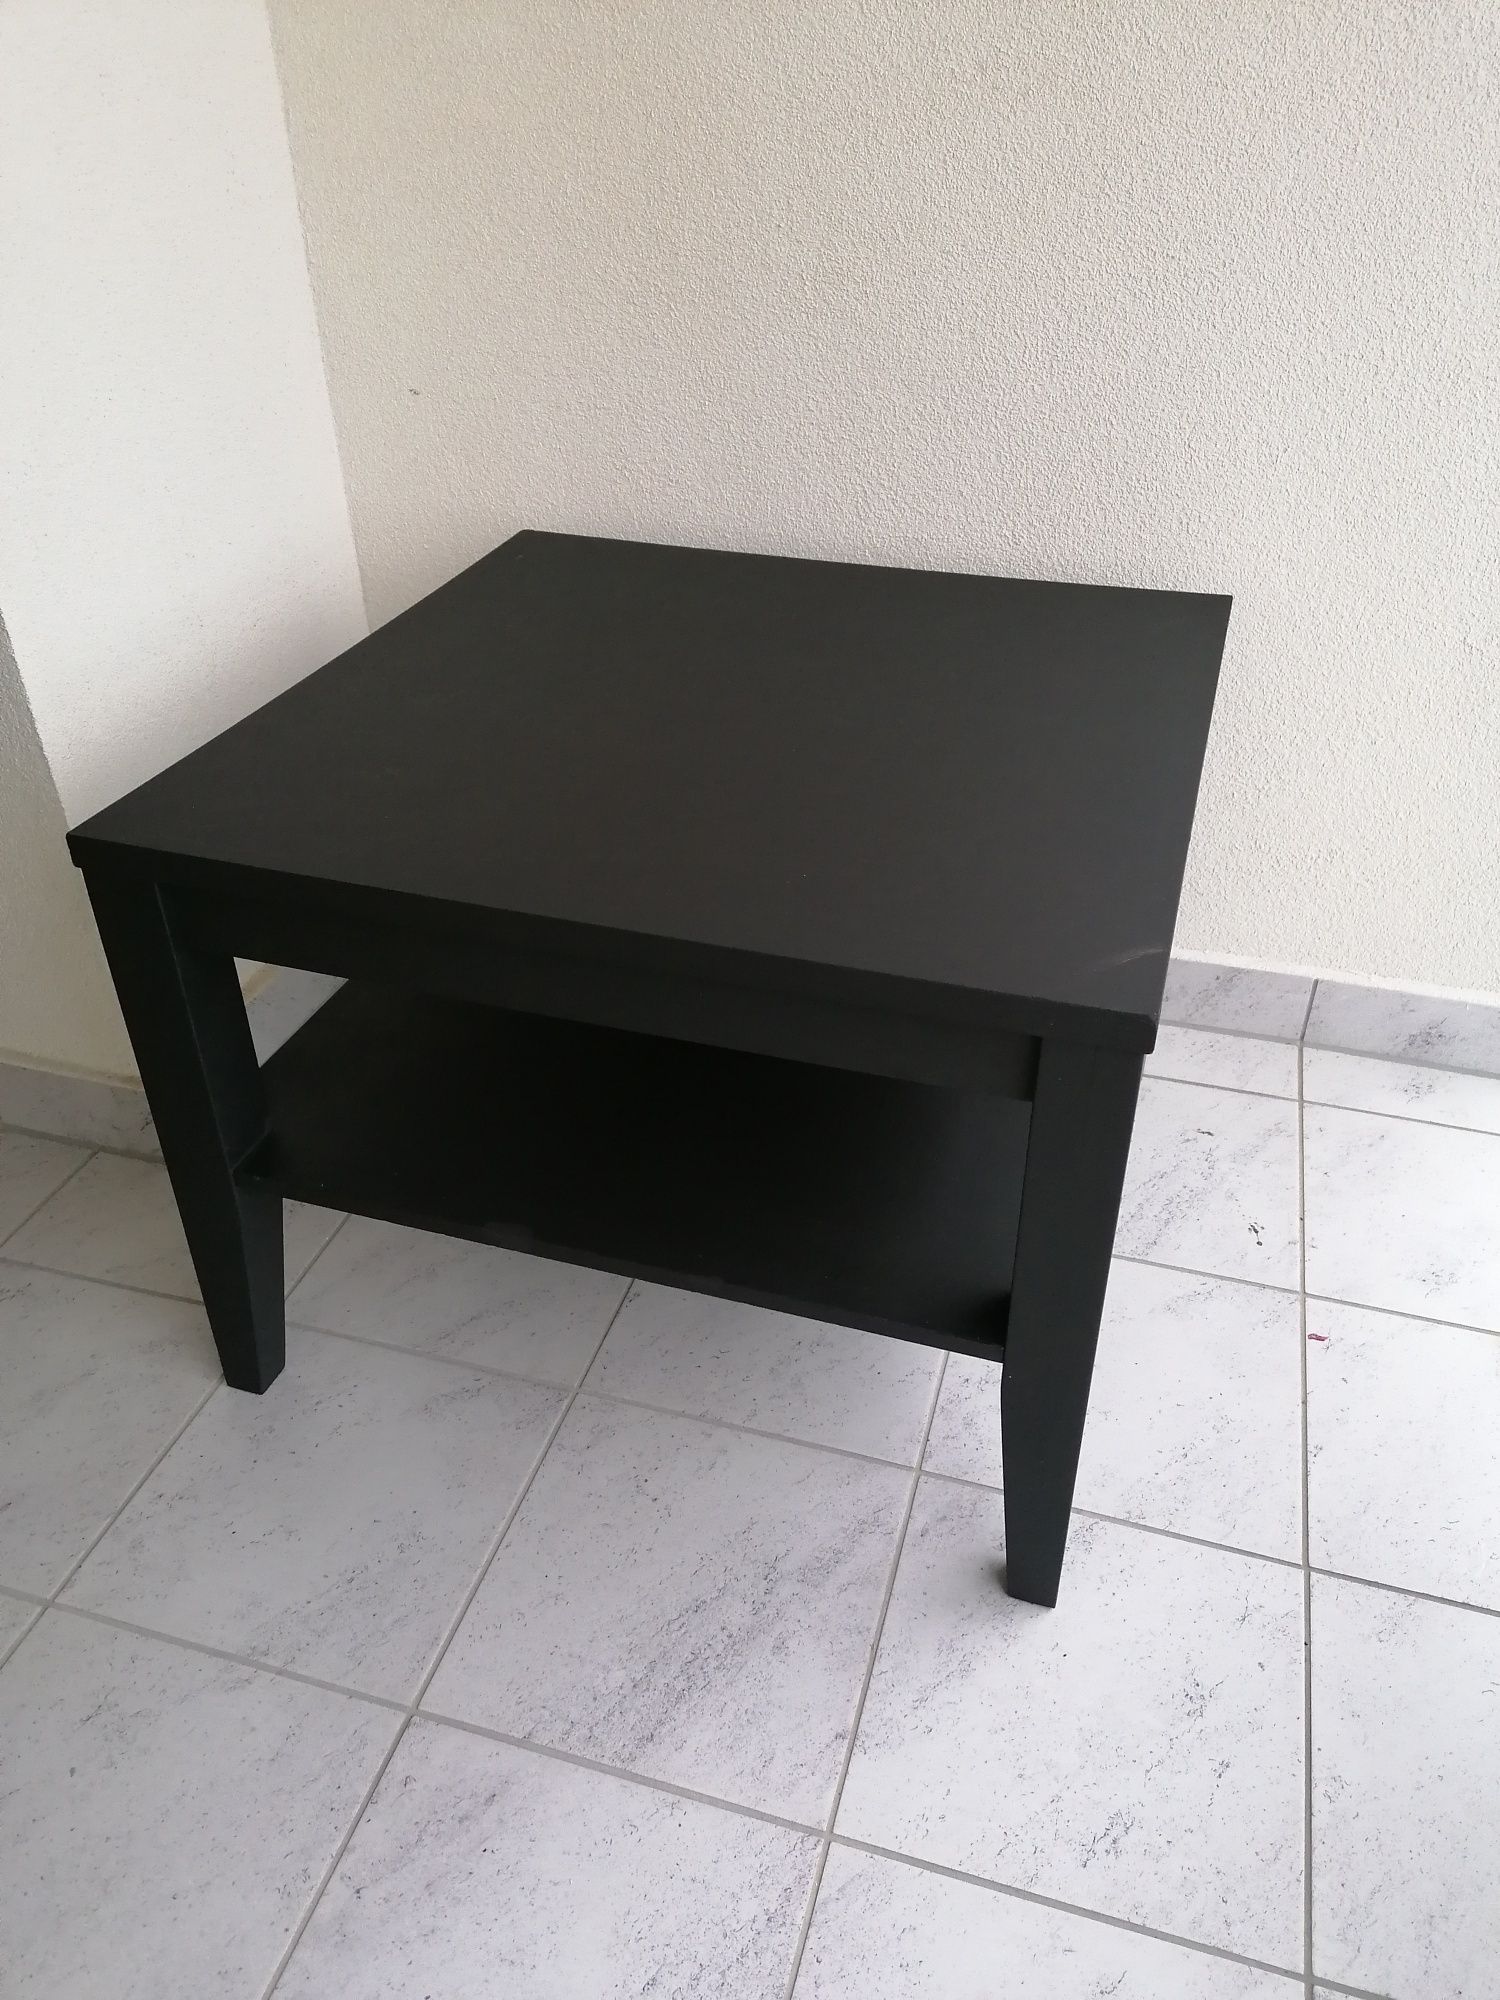 Stół stolik ława czarny duży stabilny ciężki